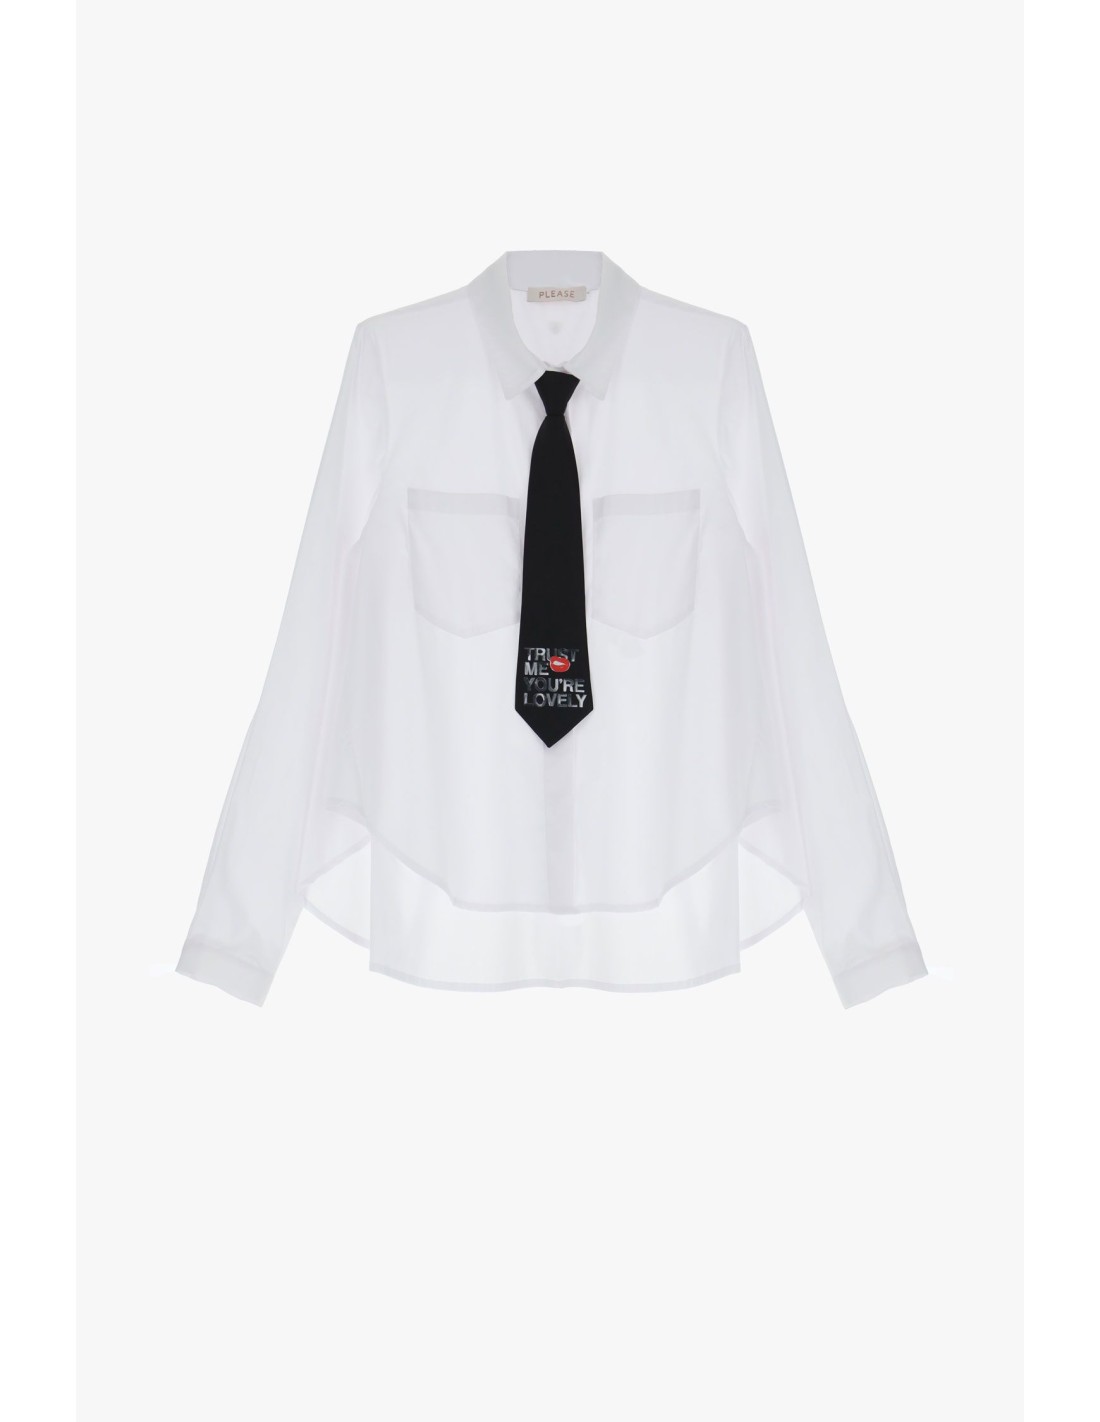 Please Femme chemise droite cravate,en coton coloris blanc